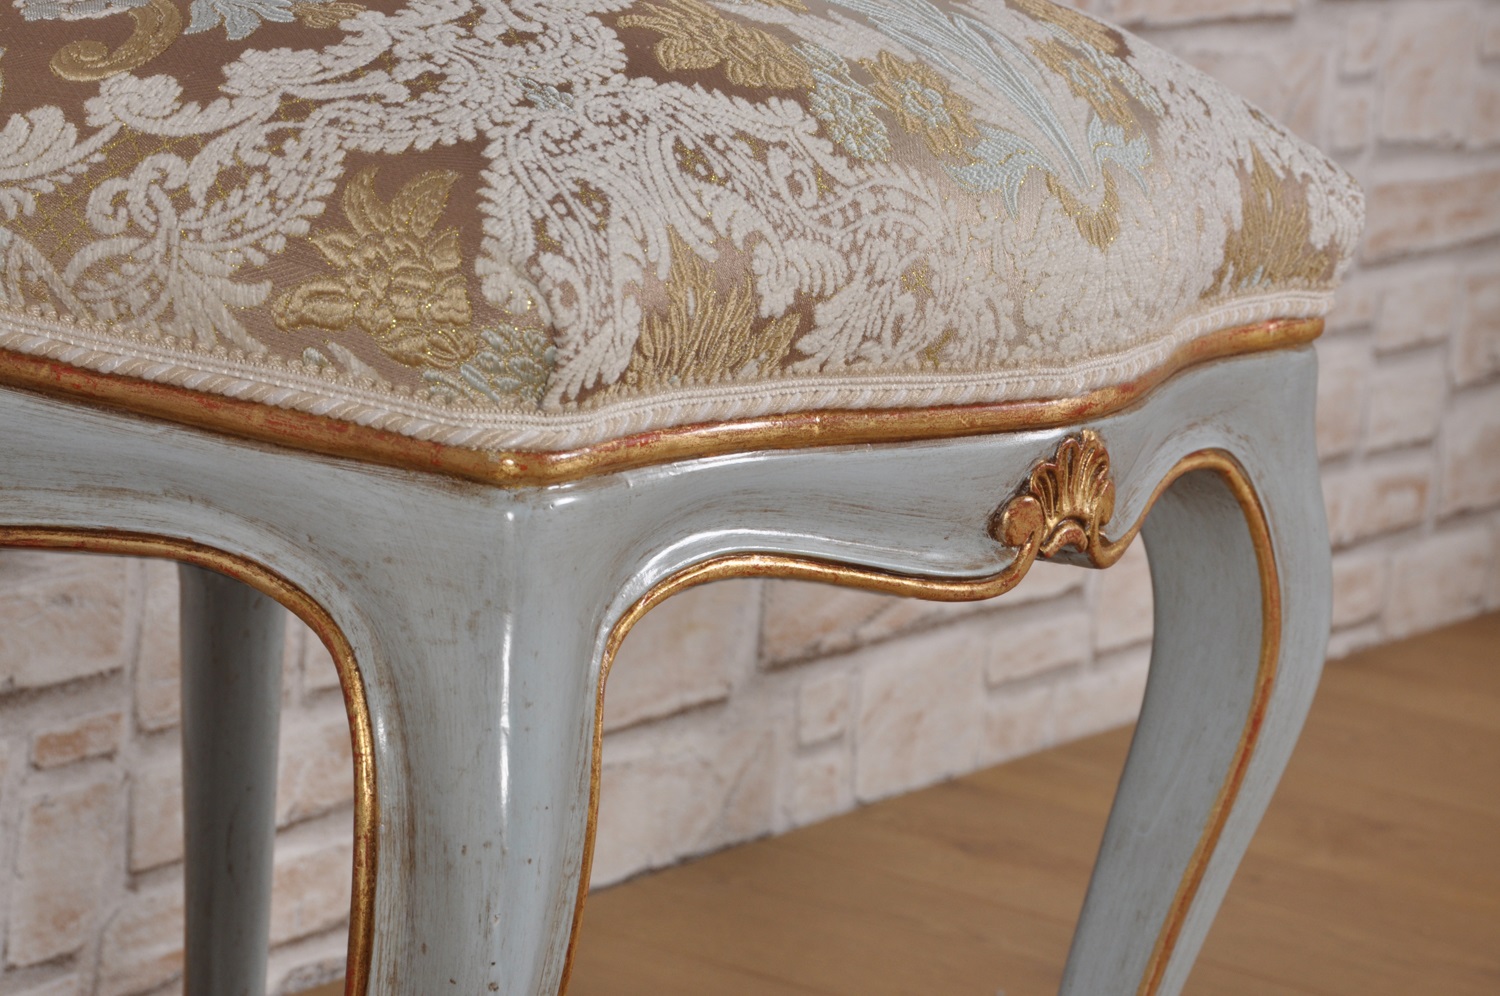 sedia riprodotta in stile Luigi XV veneziano dalle forme eleganti e raffinate con le fasce sagomate e scolpite a mano